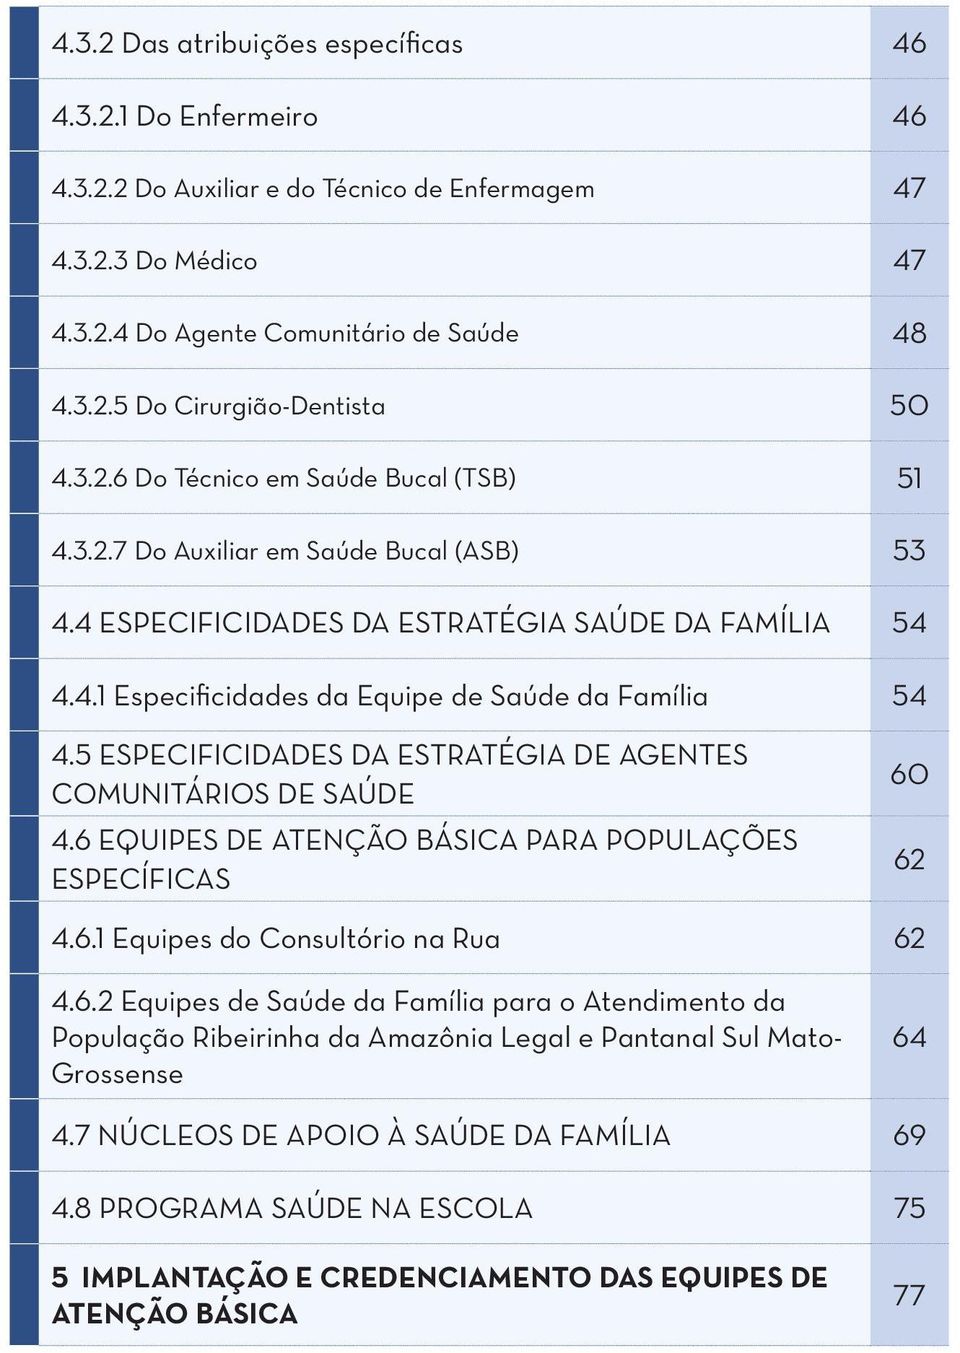 5 ESPECIFICIDADES DA ESTRATÉGIA DE AGENTES COMUNITÁRIOS DE SAÚDE 4.6 EQUIPES DE ATENÇÃO BÁSICA PARA POPULAÇÕES ESPECÍFICAS 60 62 4.6.1 Equipes do Consultório na Rua 62 4.6.2 Equipes de Saúde da Família para o Atendimento da População Ribeirinha da Amazônia Legal e Pantanal Sul Mato- Grossense 64 4.